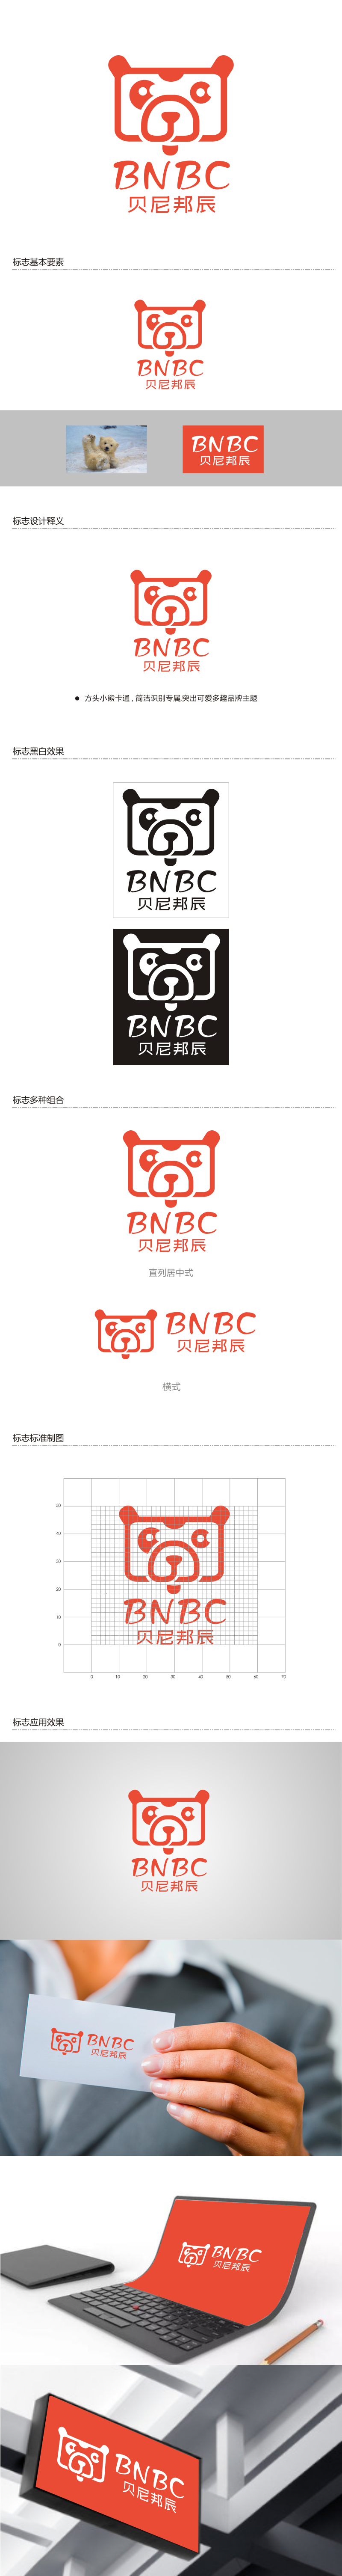 姜彦海的贝尼邦辰logo设计